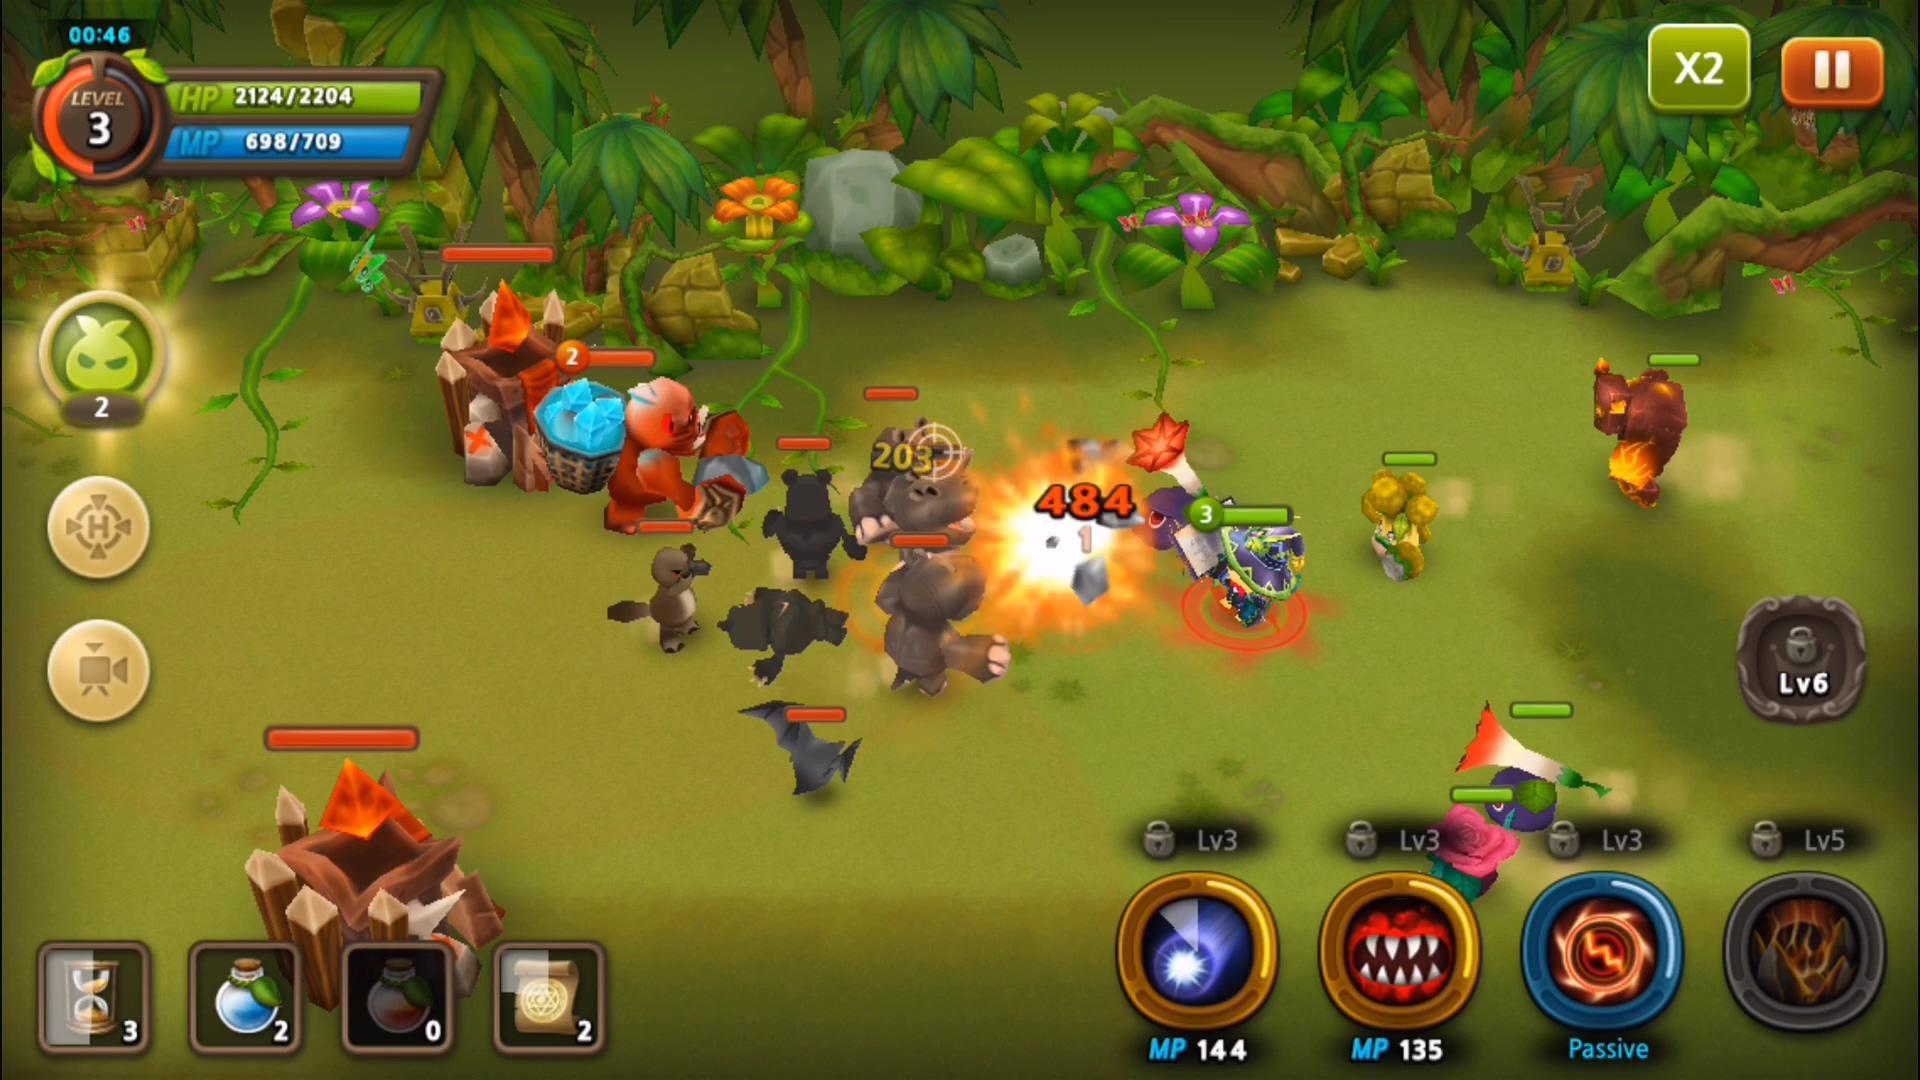 Screenshot of 植物保卫战2 (Plants War 2)